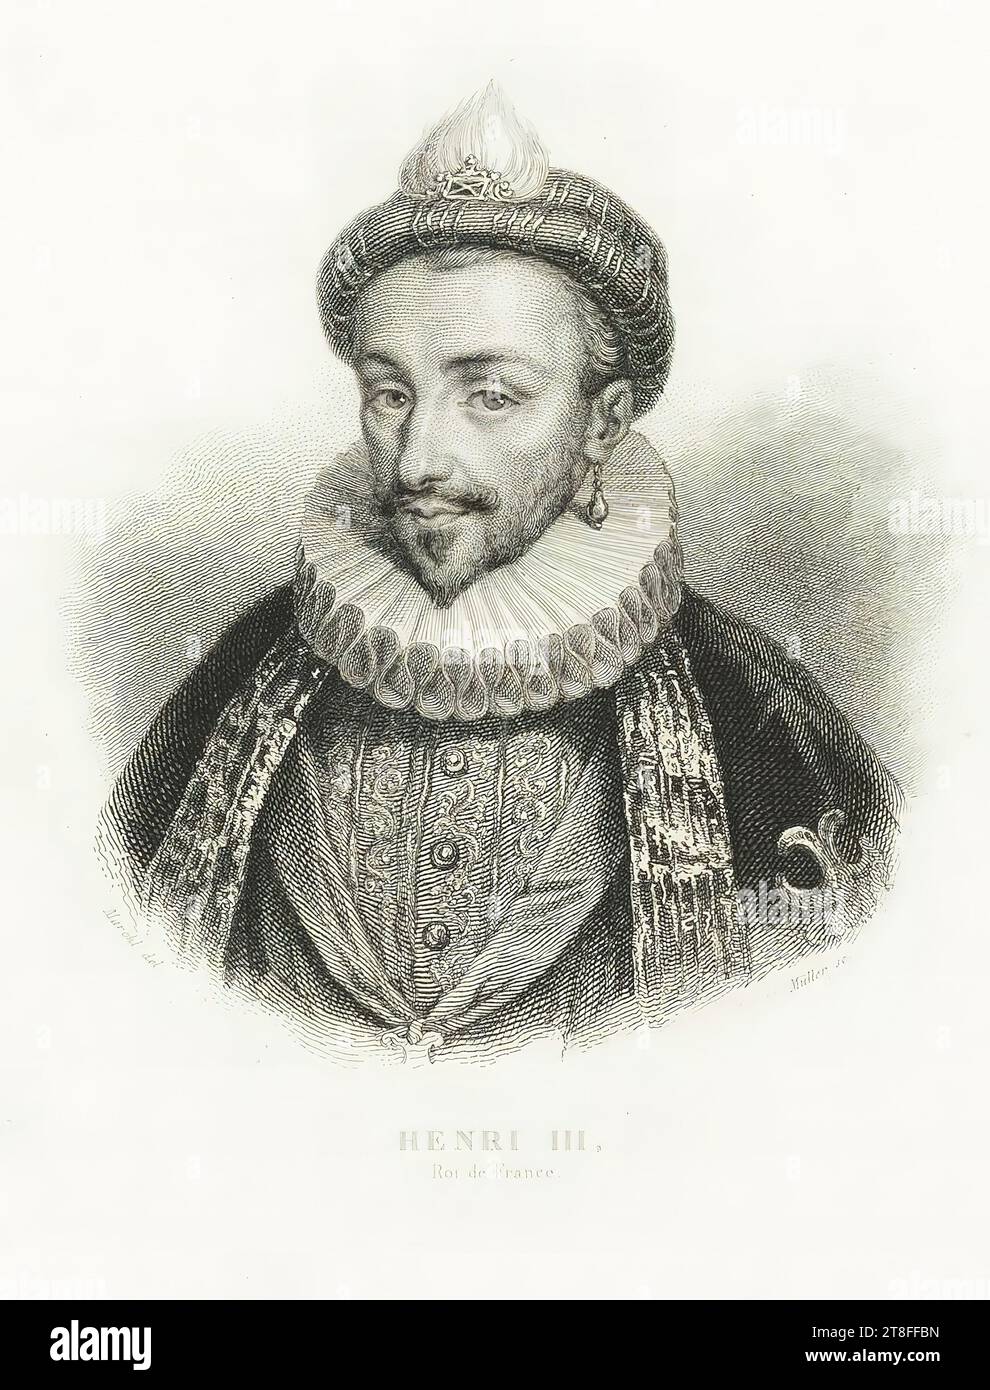 Marckl del. Muller sc. Enrico III, re di Francia. Pubblicato da Pourrat F., a Parigi Foto Stock